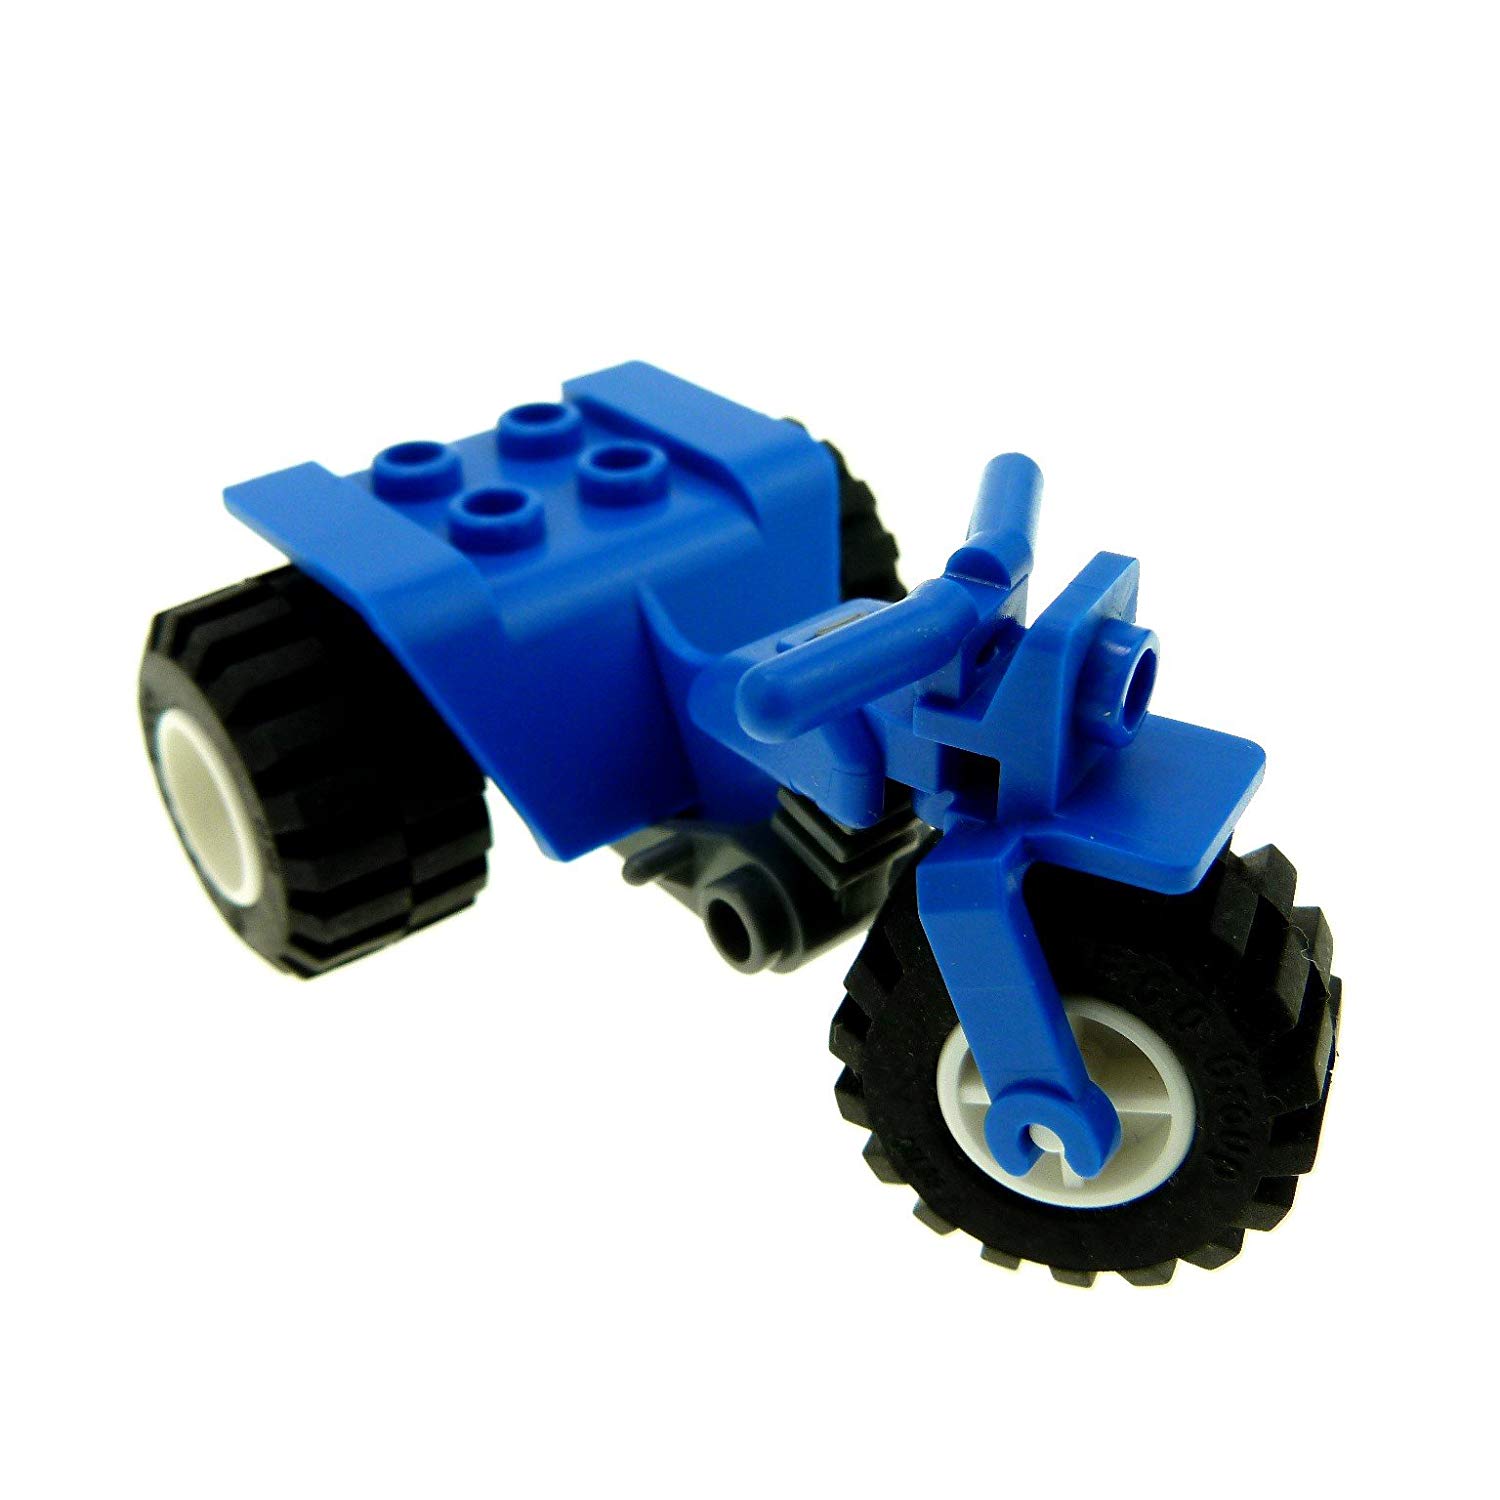 1 X Lego Trike Motorbike Blue And Wheels White F61